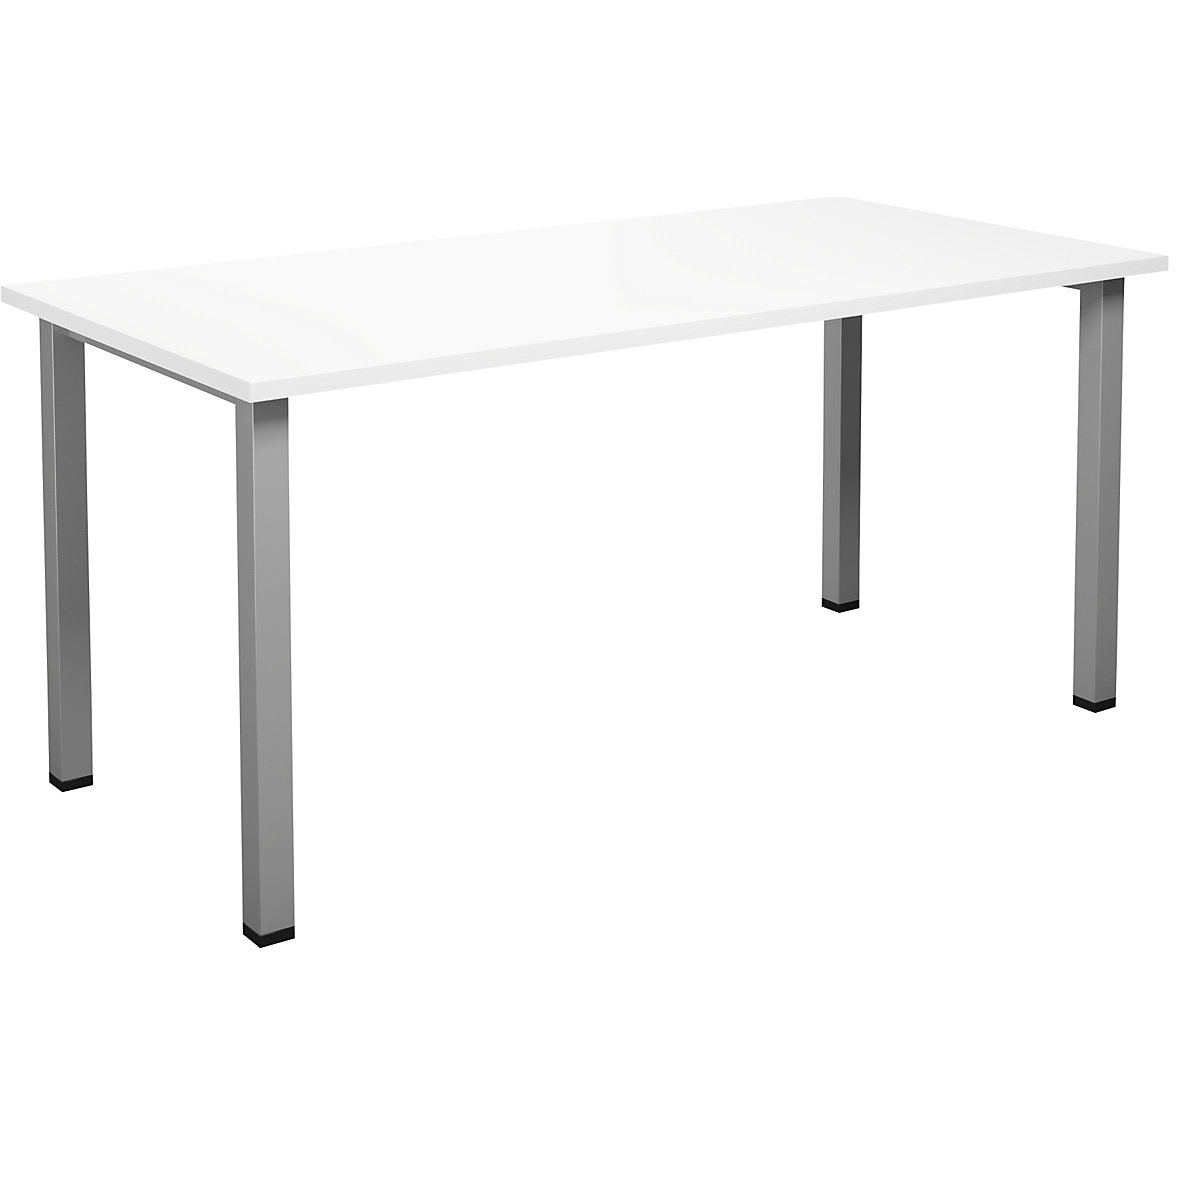 DUO-U multi-purpose desk, straight tabletop, WxD 1600 x 800 mm, white, silver-17